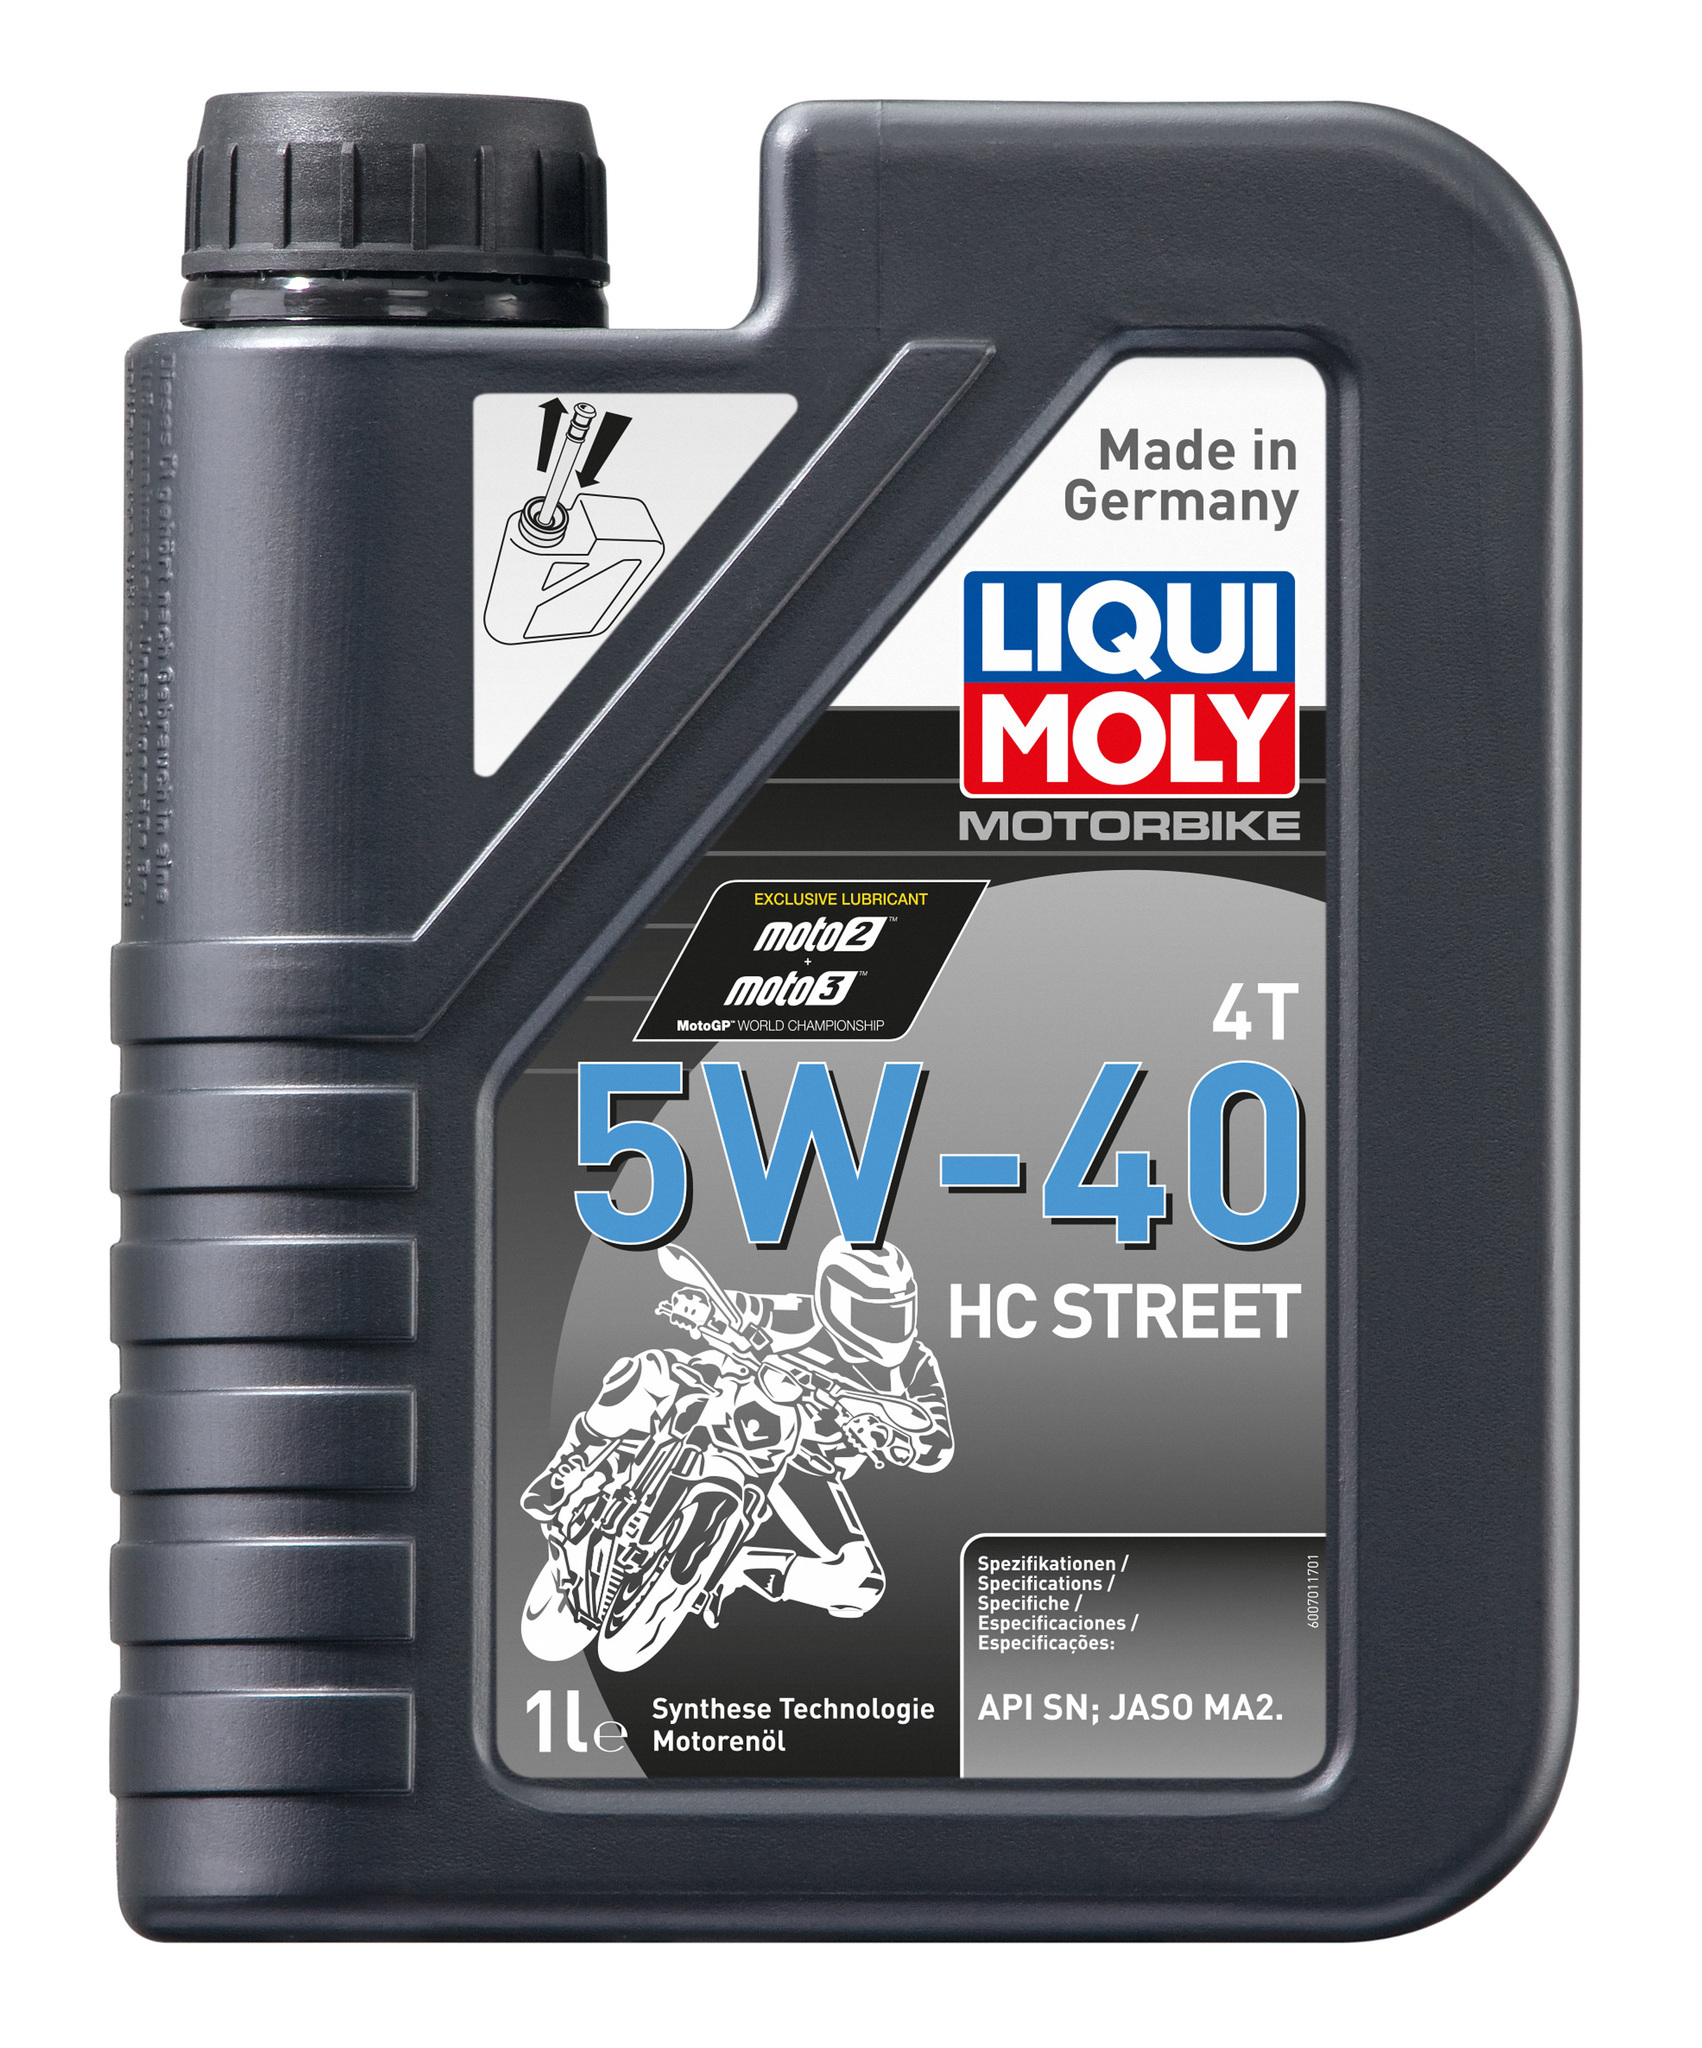 Моторное масло Liqui Moly Motorbike 4T HC Street 5W40 hc-синтетическое 1л